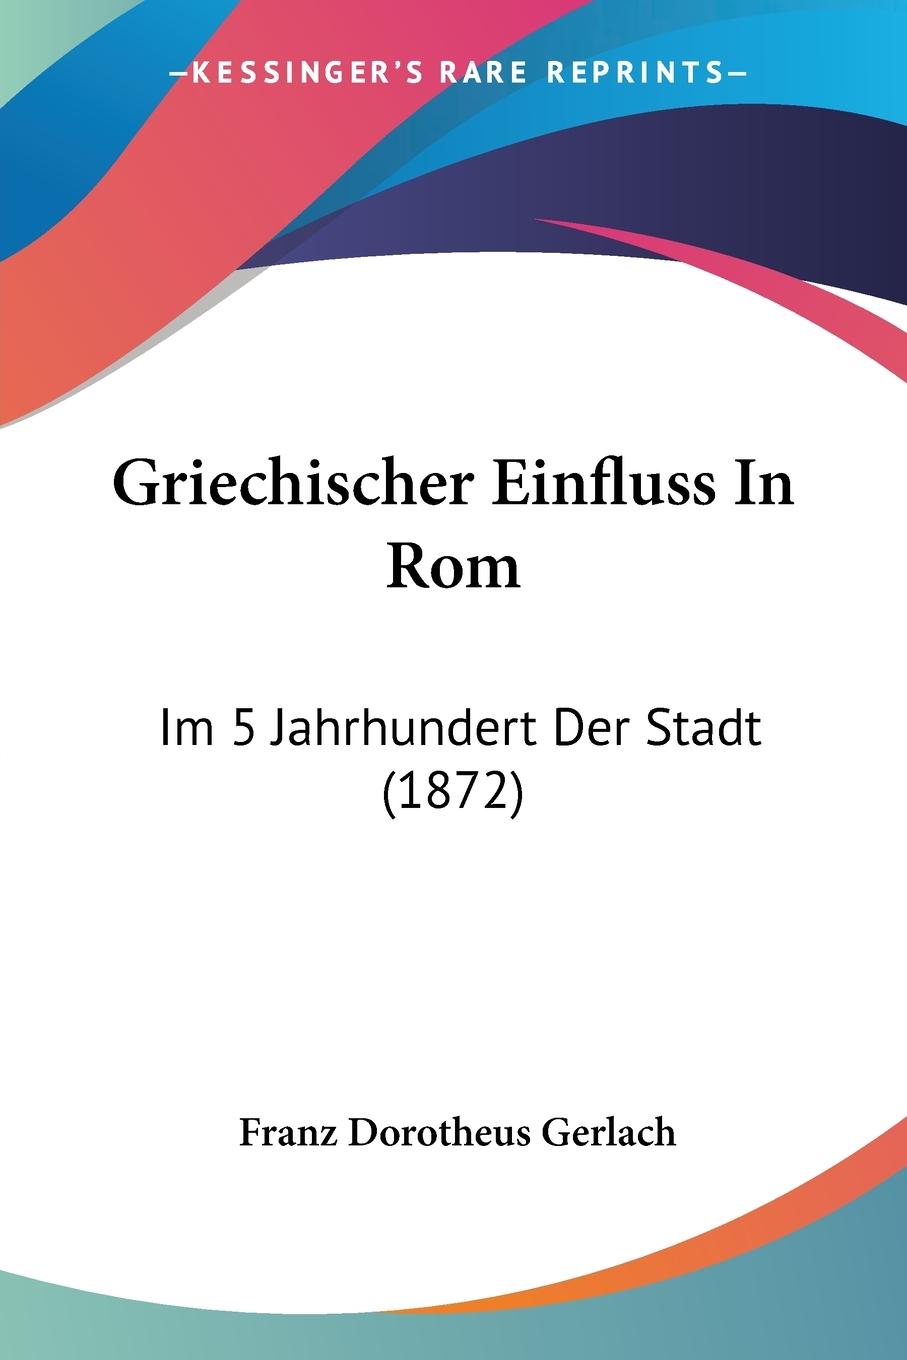 Griechischer Einfluss In Rom - Gerlach, Franz Dorotheus